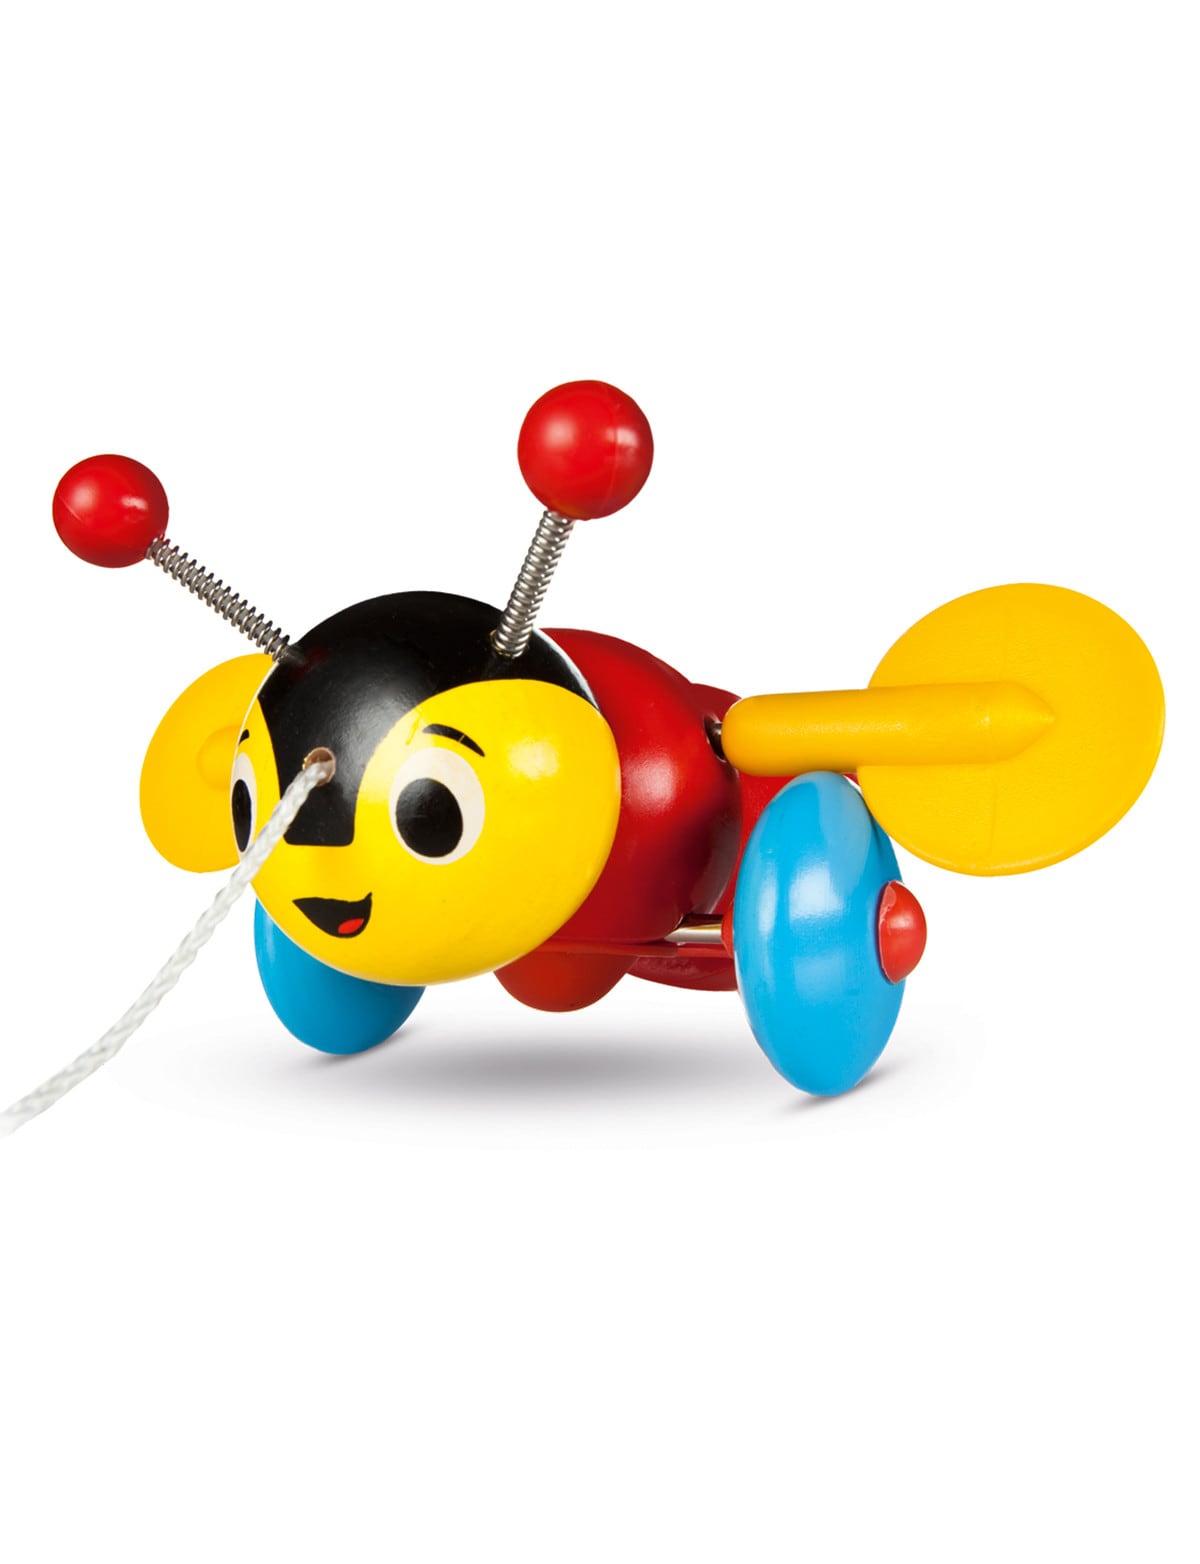 Buzzy Bee Wooden Toy, Manuka Honey of NZ